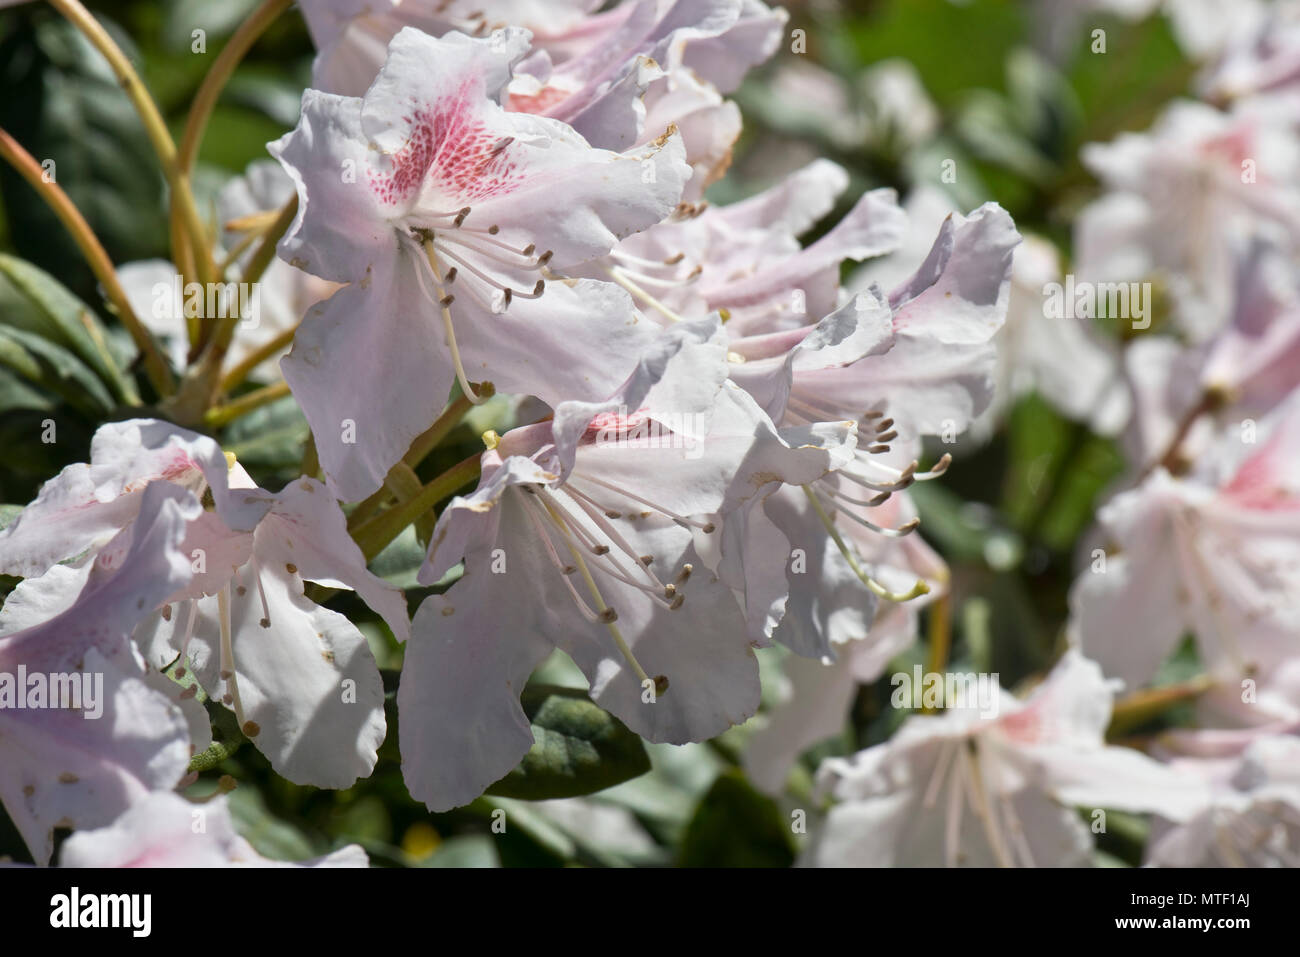 Les fleurs et les feuilles de Rhododendron 'Cunningham' Blanc, légère fleurs roses sur ce flowerinf printemps éricacée arbustive, Berkshire, Mai Banque D'Images